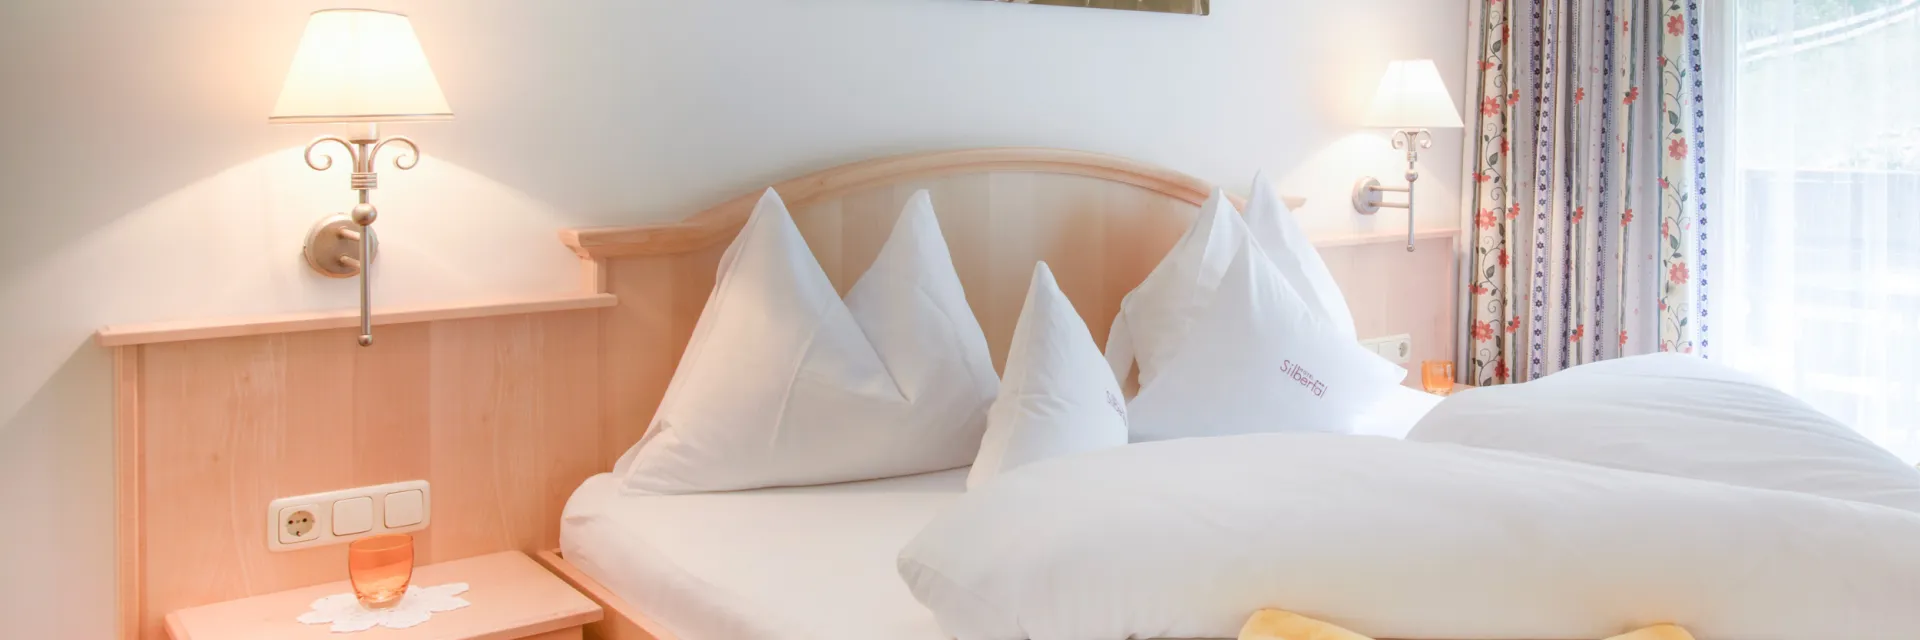 Schön gemachtes Doppelbett in einem Hotelzimmer mit gelben Elementen auf dem Bett. 